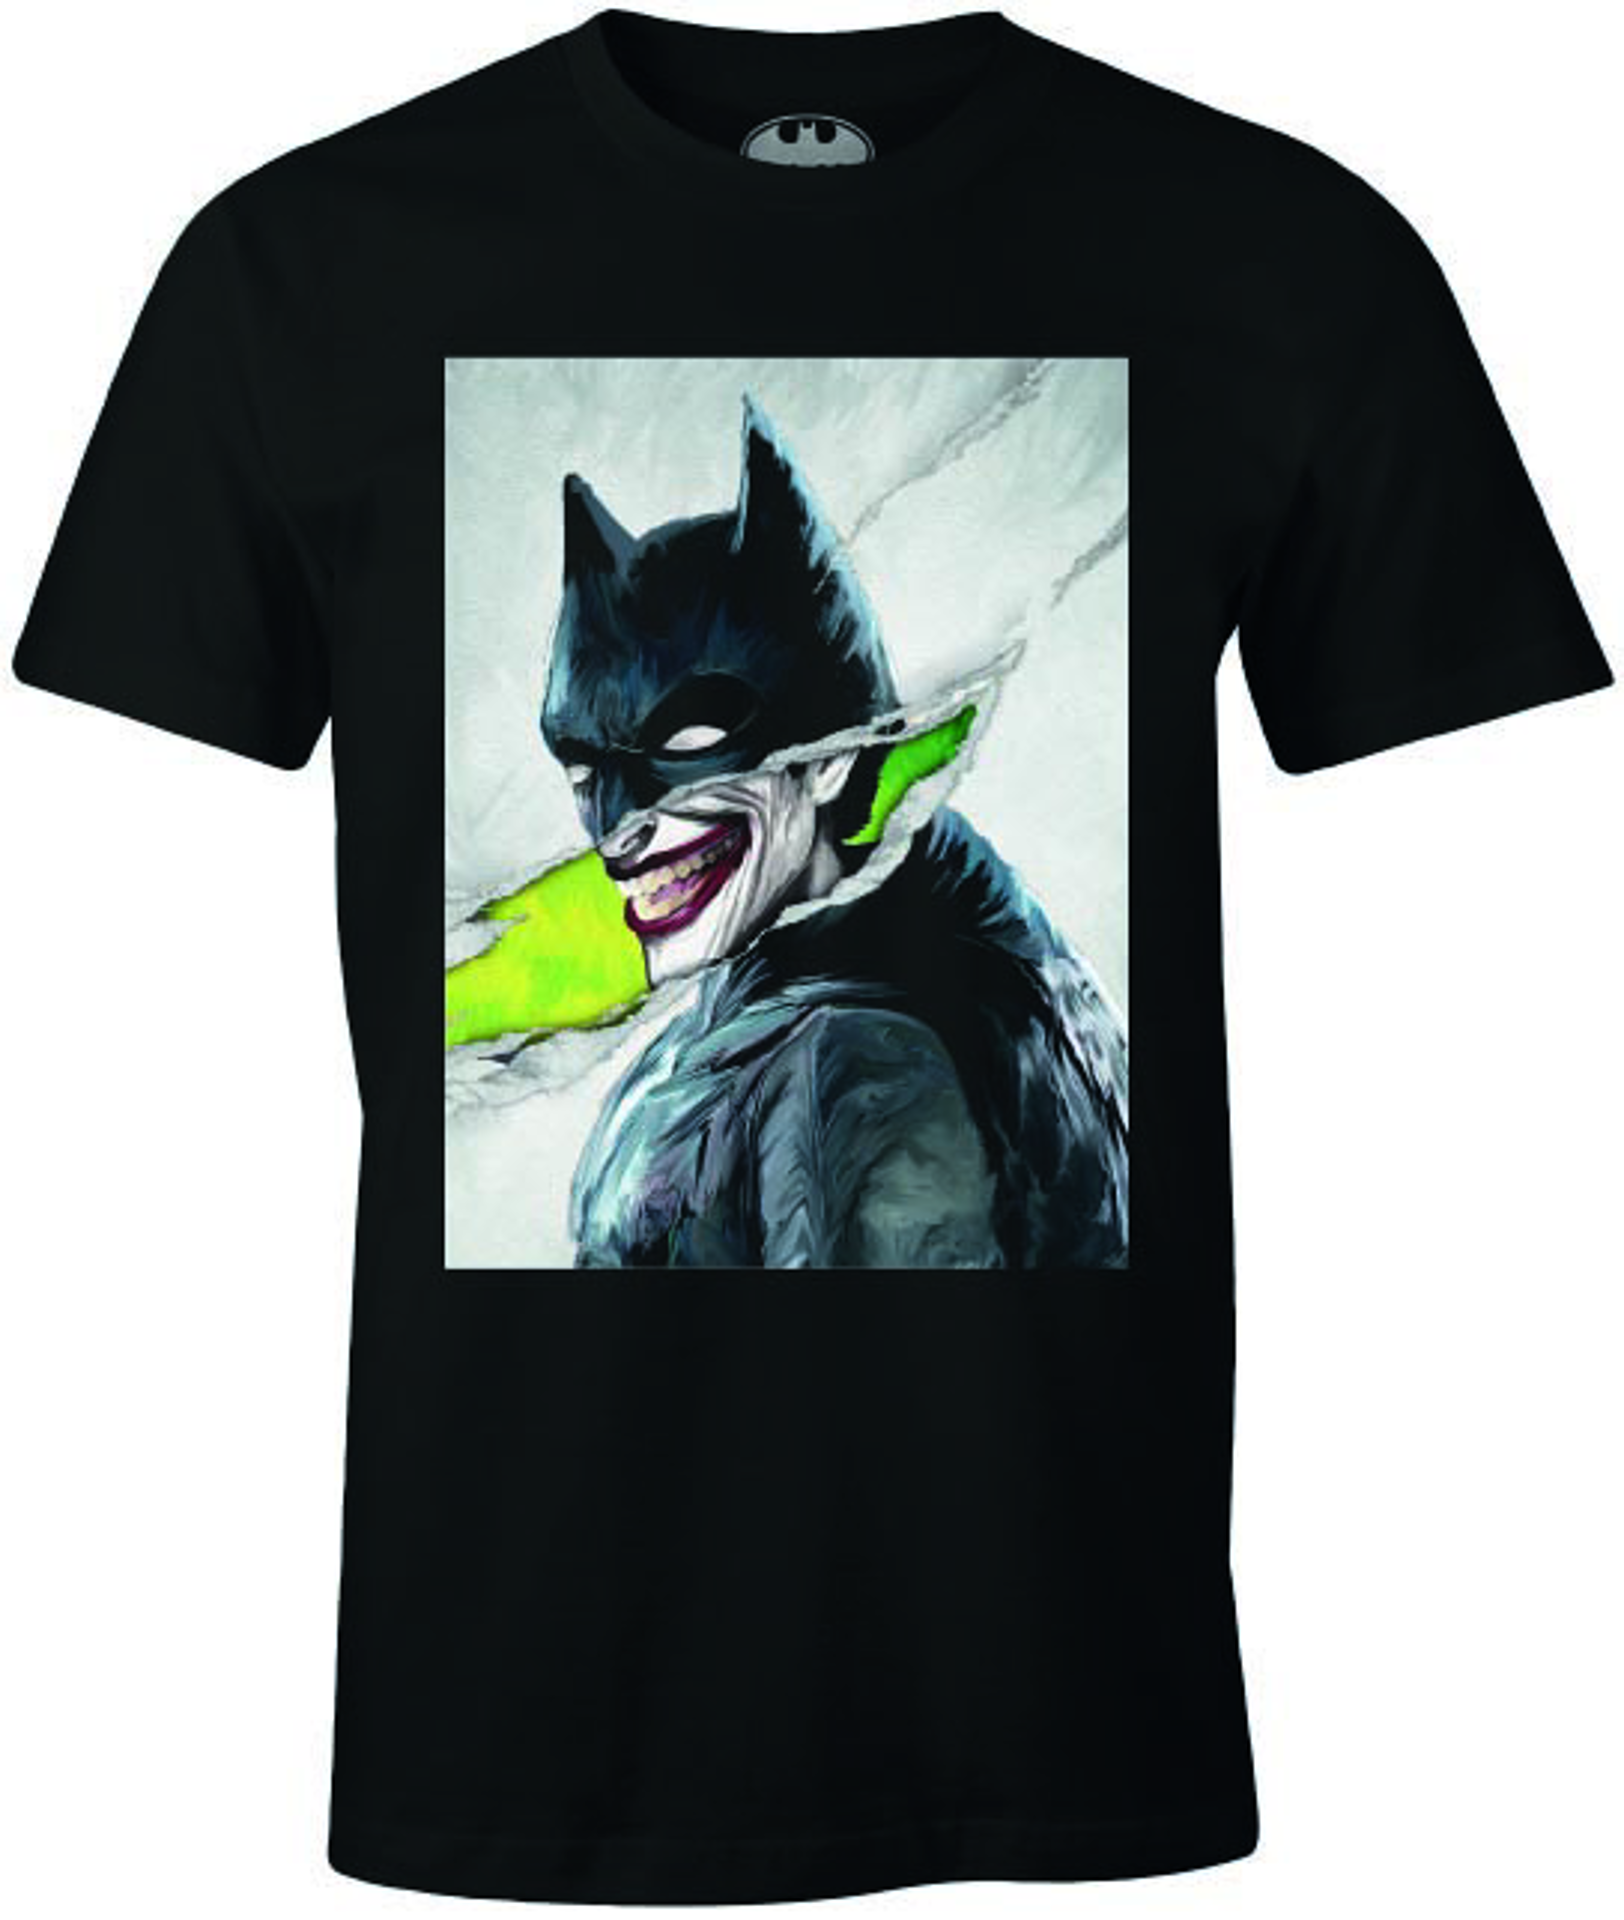 DC Comics - Batman - T-shirt Noir Hommes - Le Joker déguisé en Batman - L